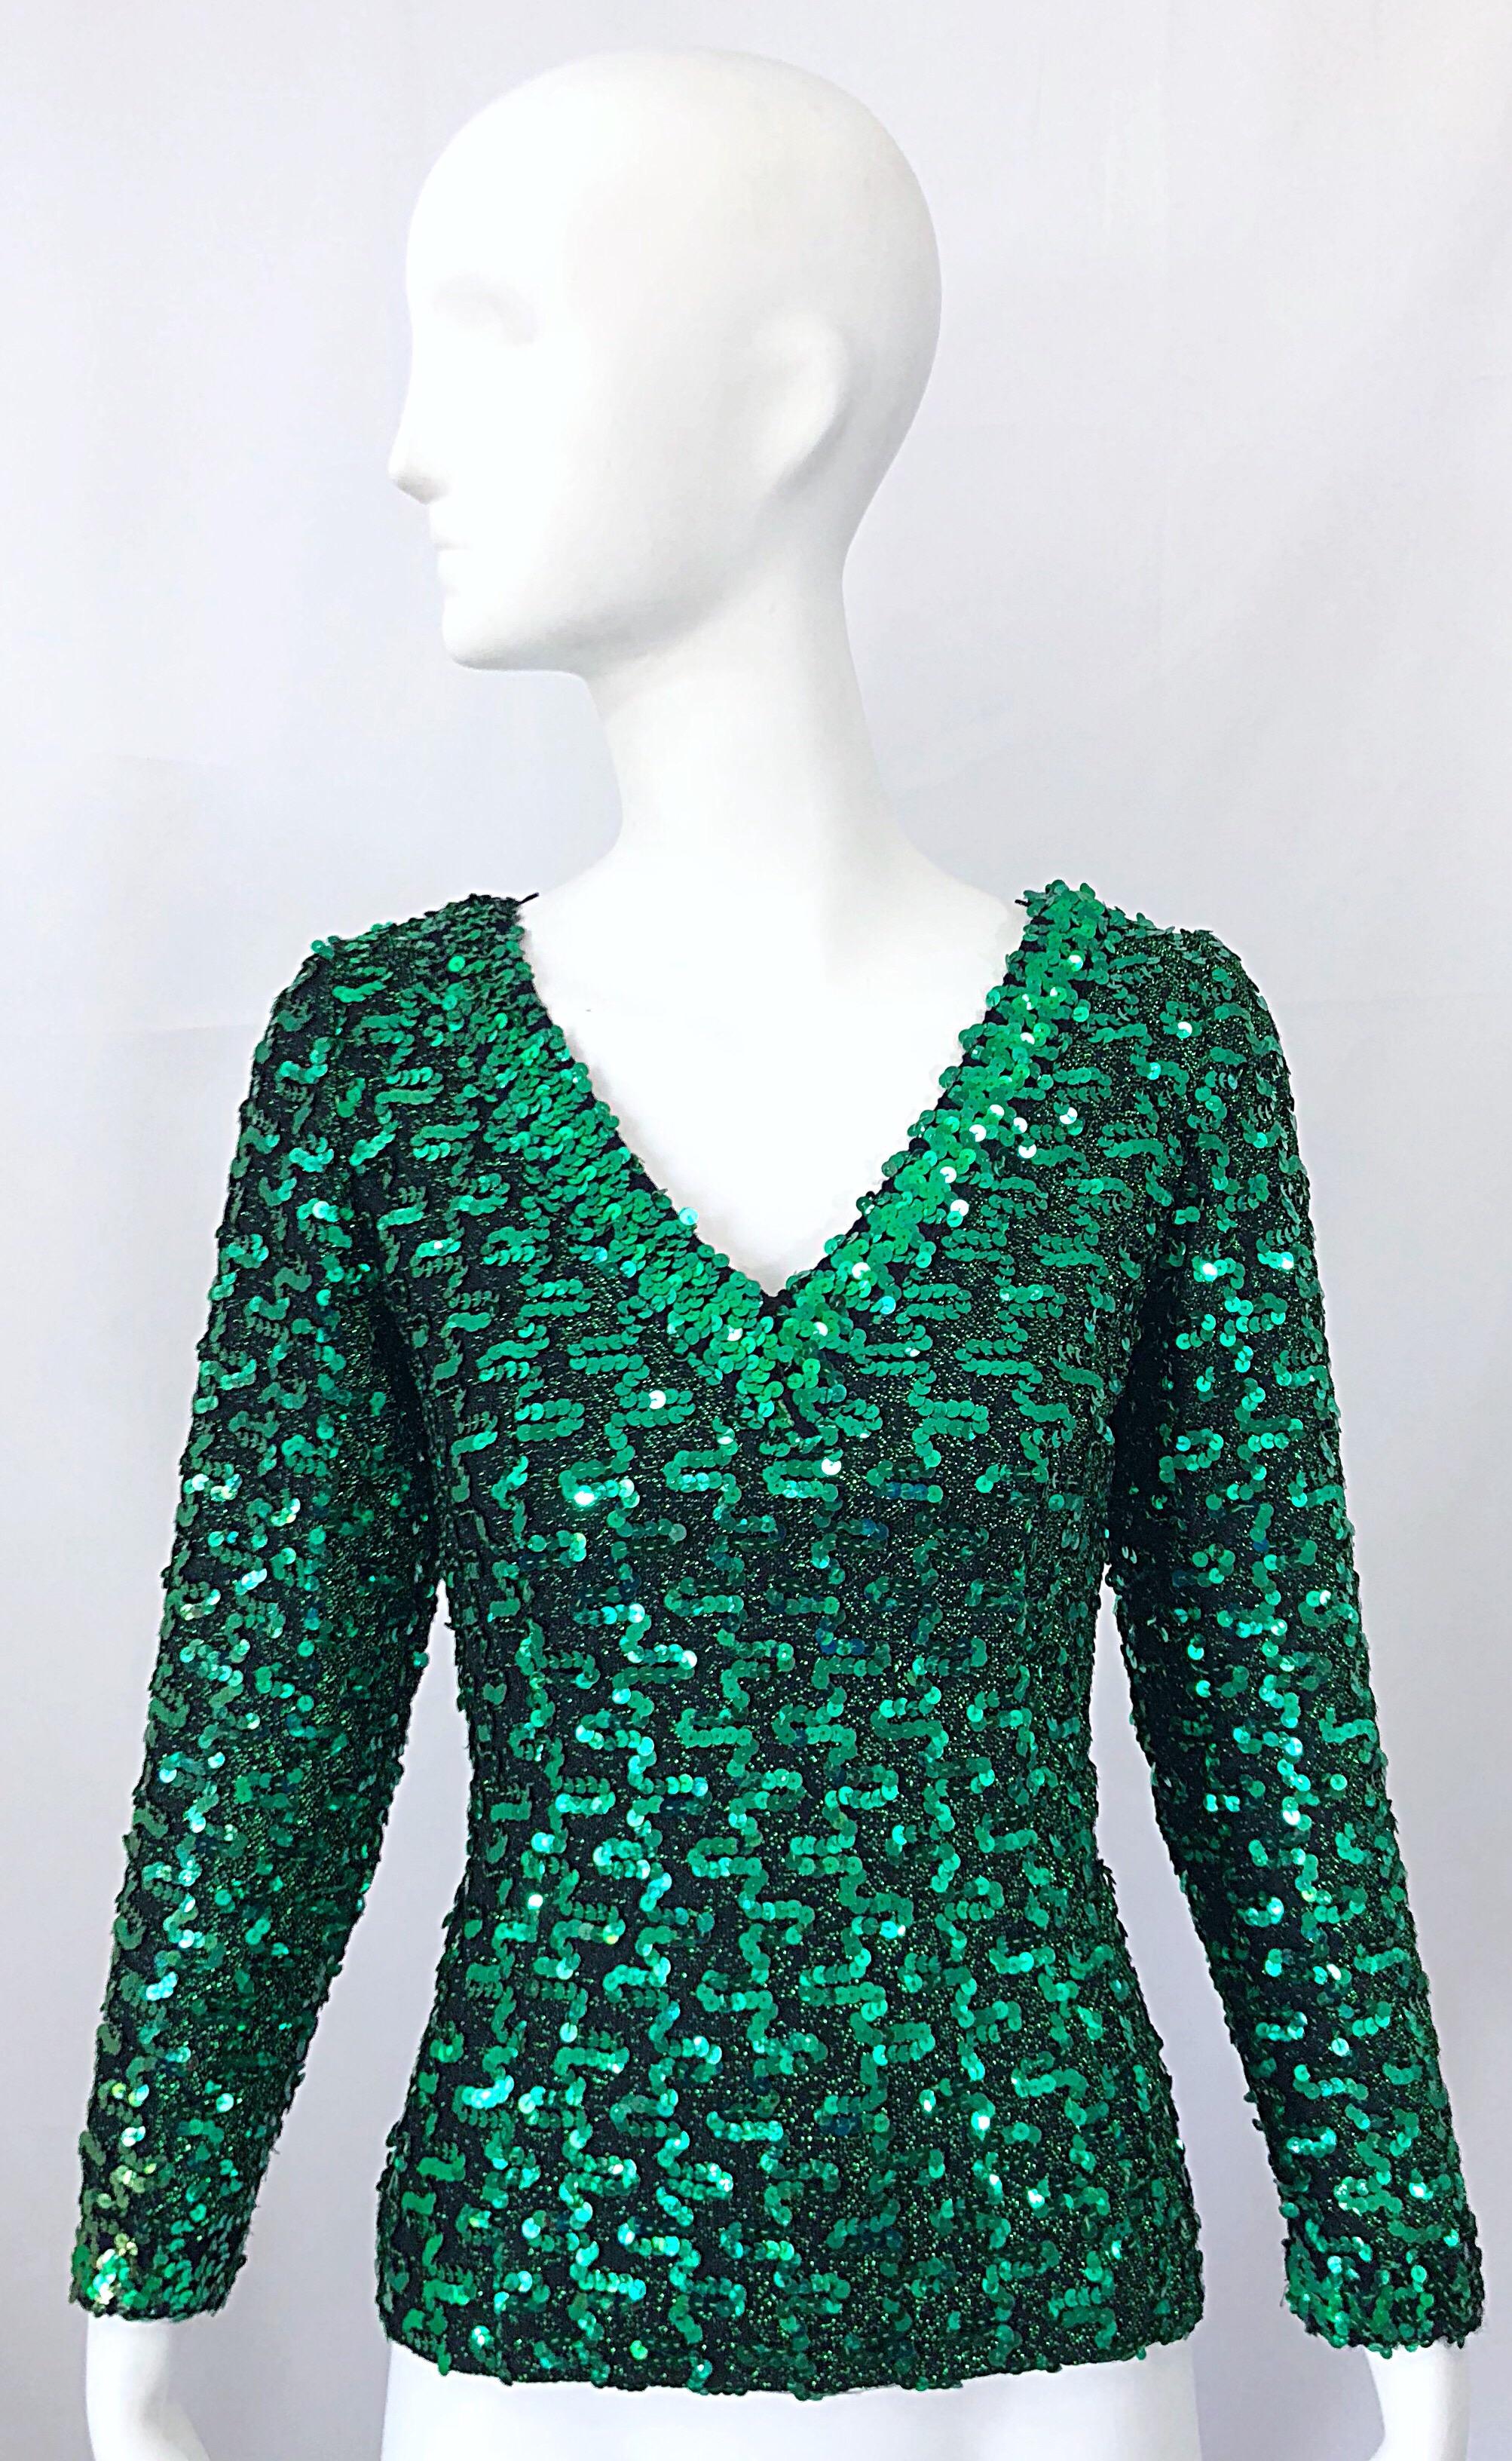 Magnifique, et juste à temps pour les fêtes ! Vintage 70s LILLI DIAMOND kelly green metallic knit jersey top sequined ! Maillot vert métallisé avec des milliers de paillettes cousues à la main. Une coupe fantastique qui s'étire pour s'adapter.